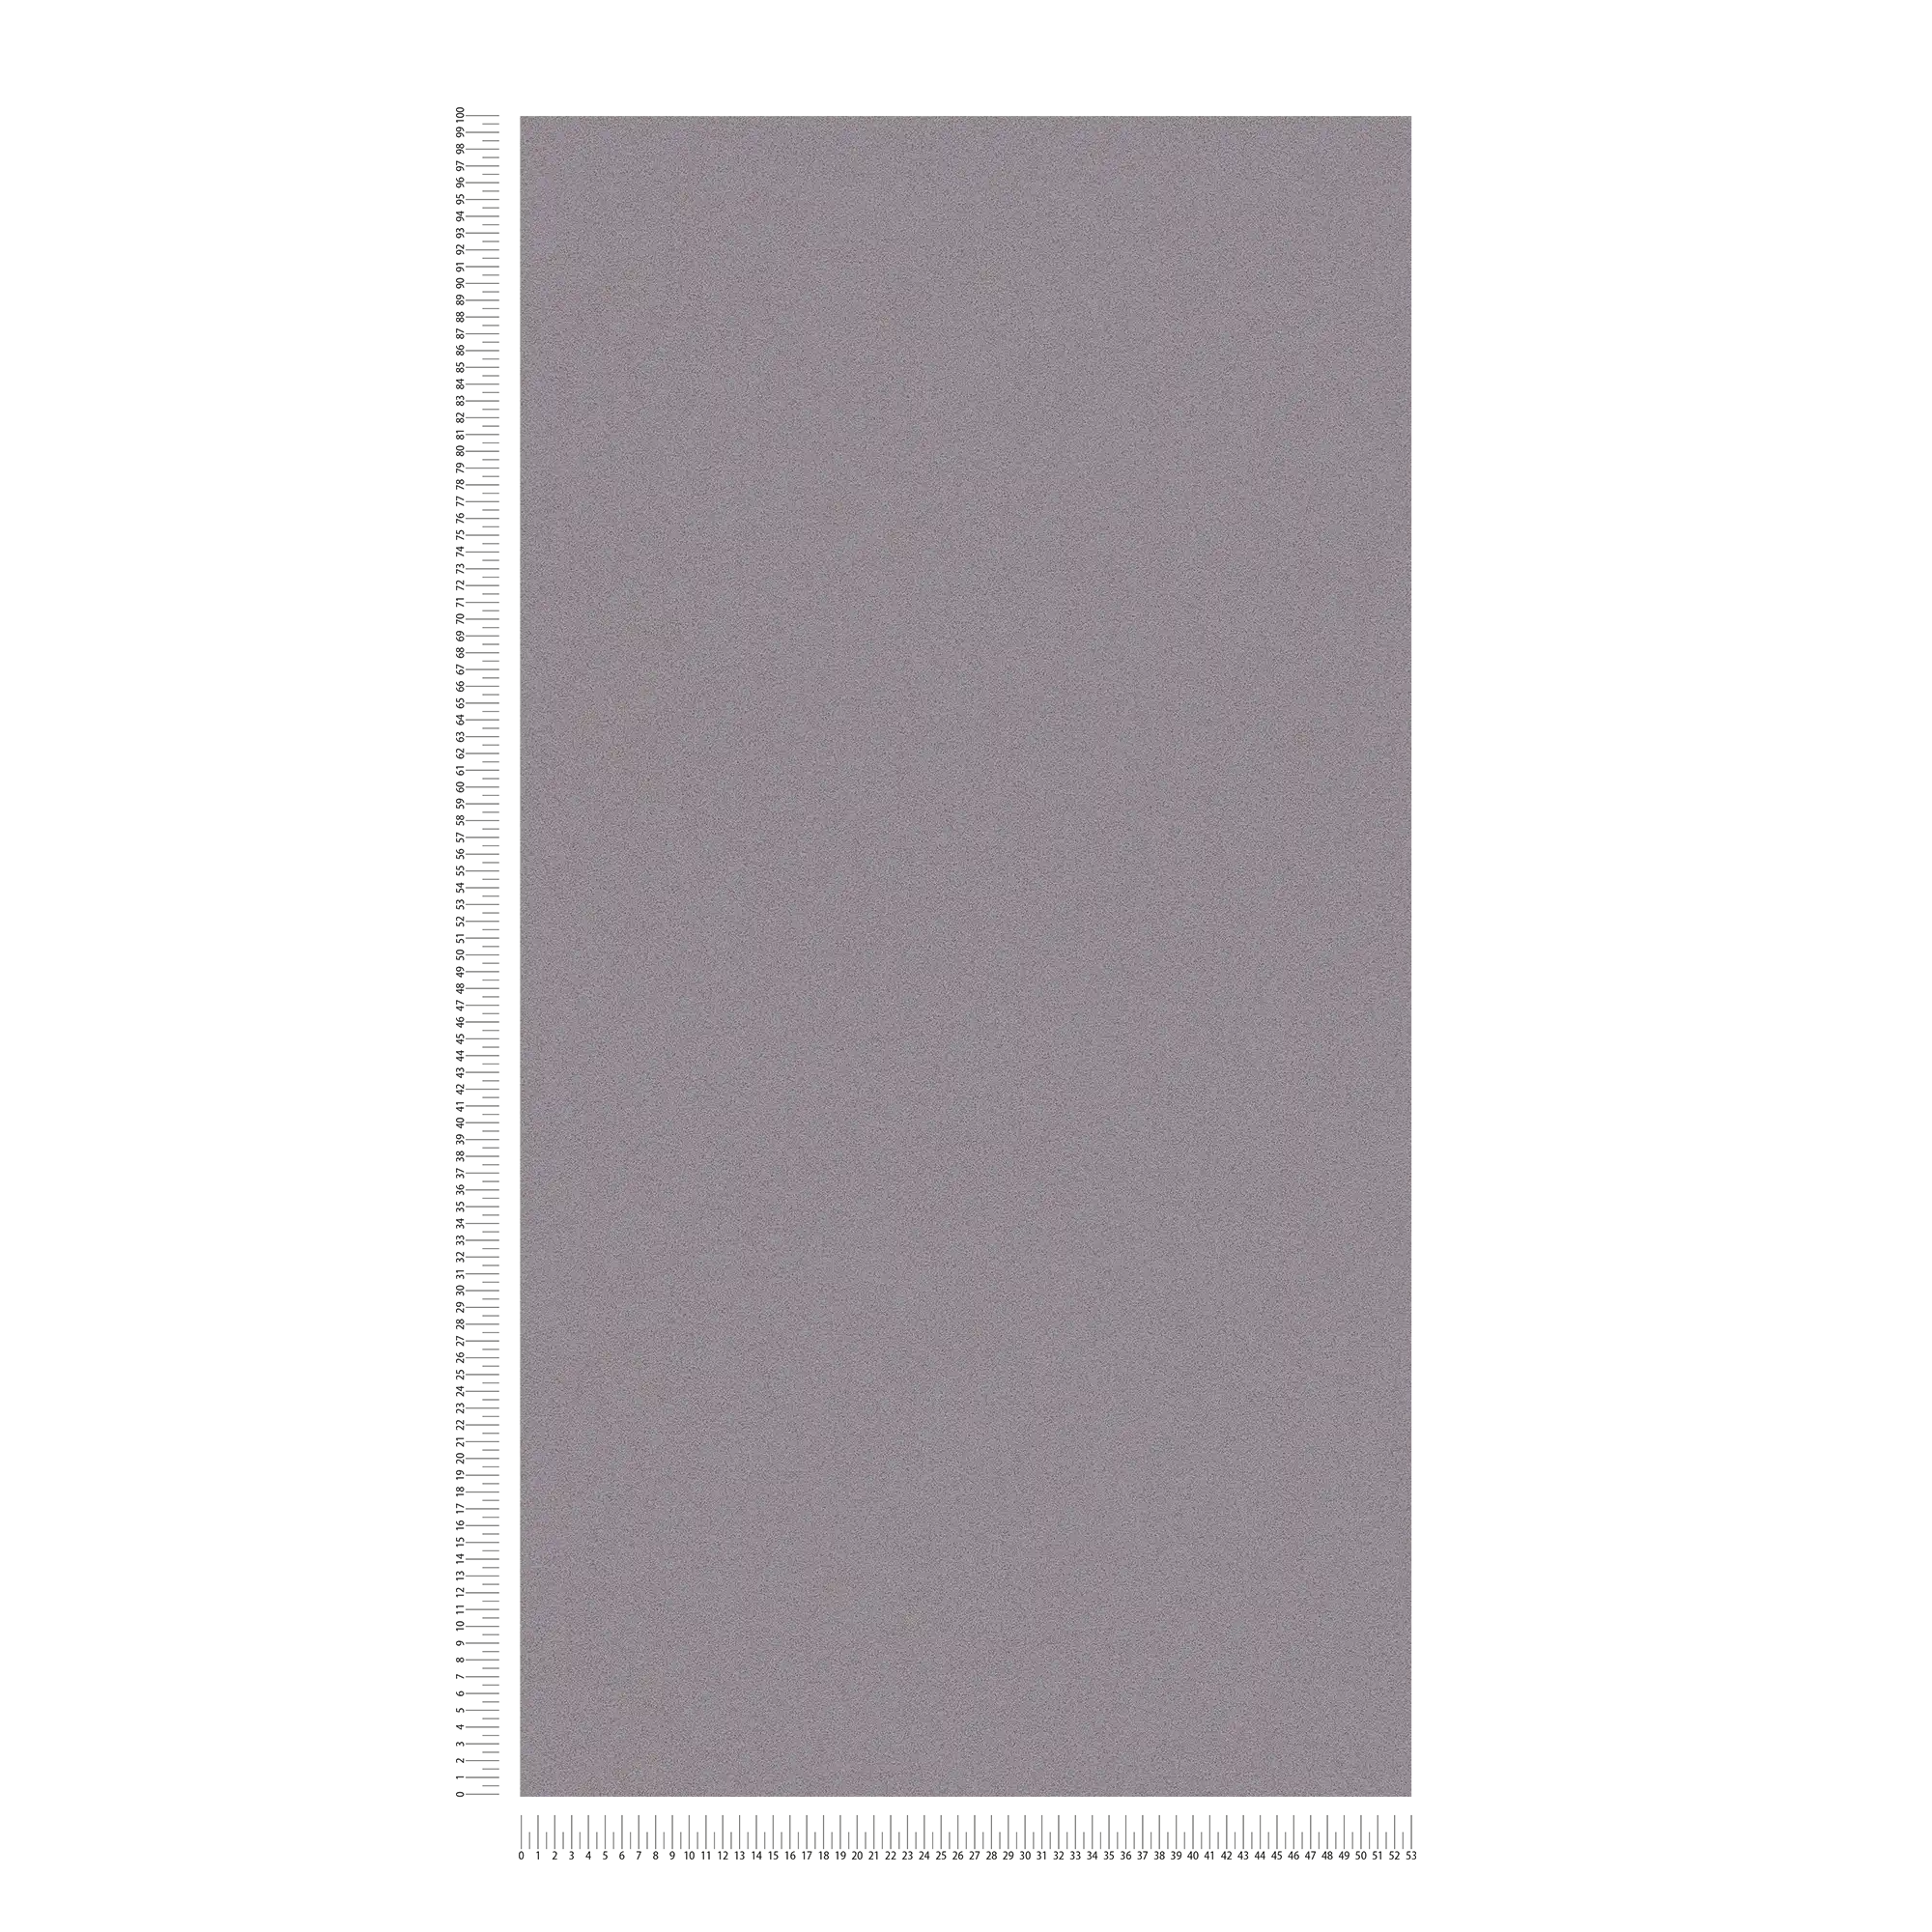             papel pintado gris paloma y mate con aspecto de yeso fino moteado
        